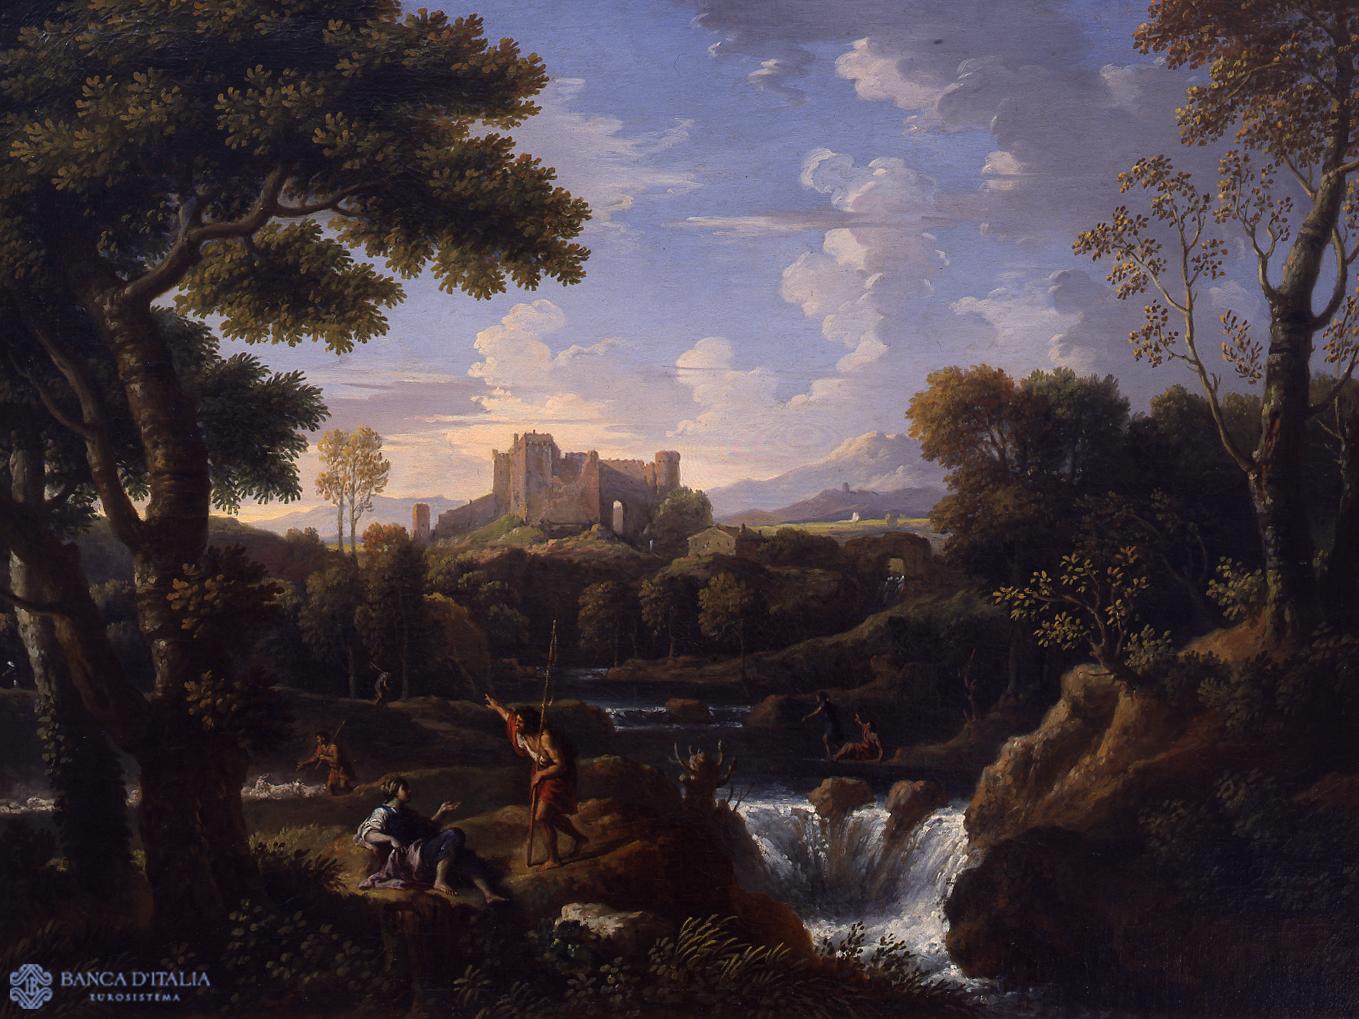 Paesaggio fluviale con le rovine di un castello